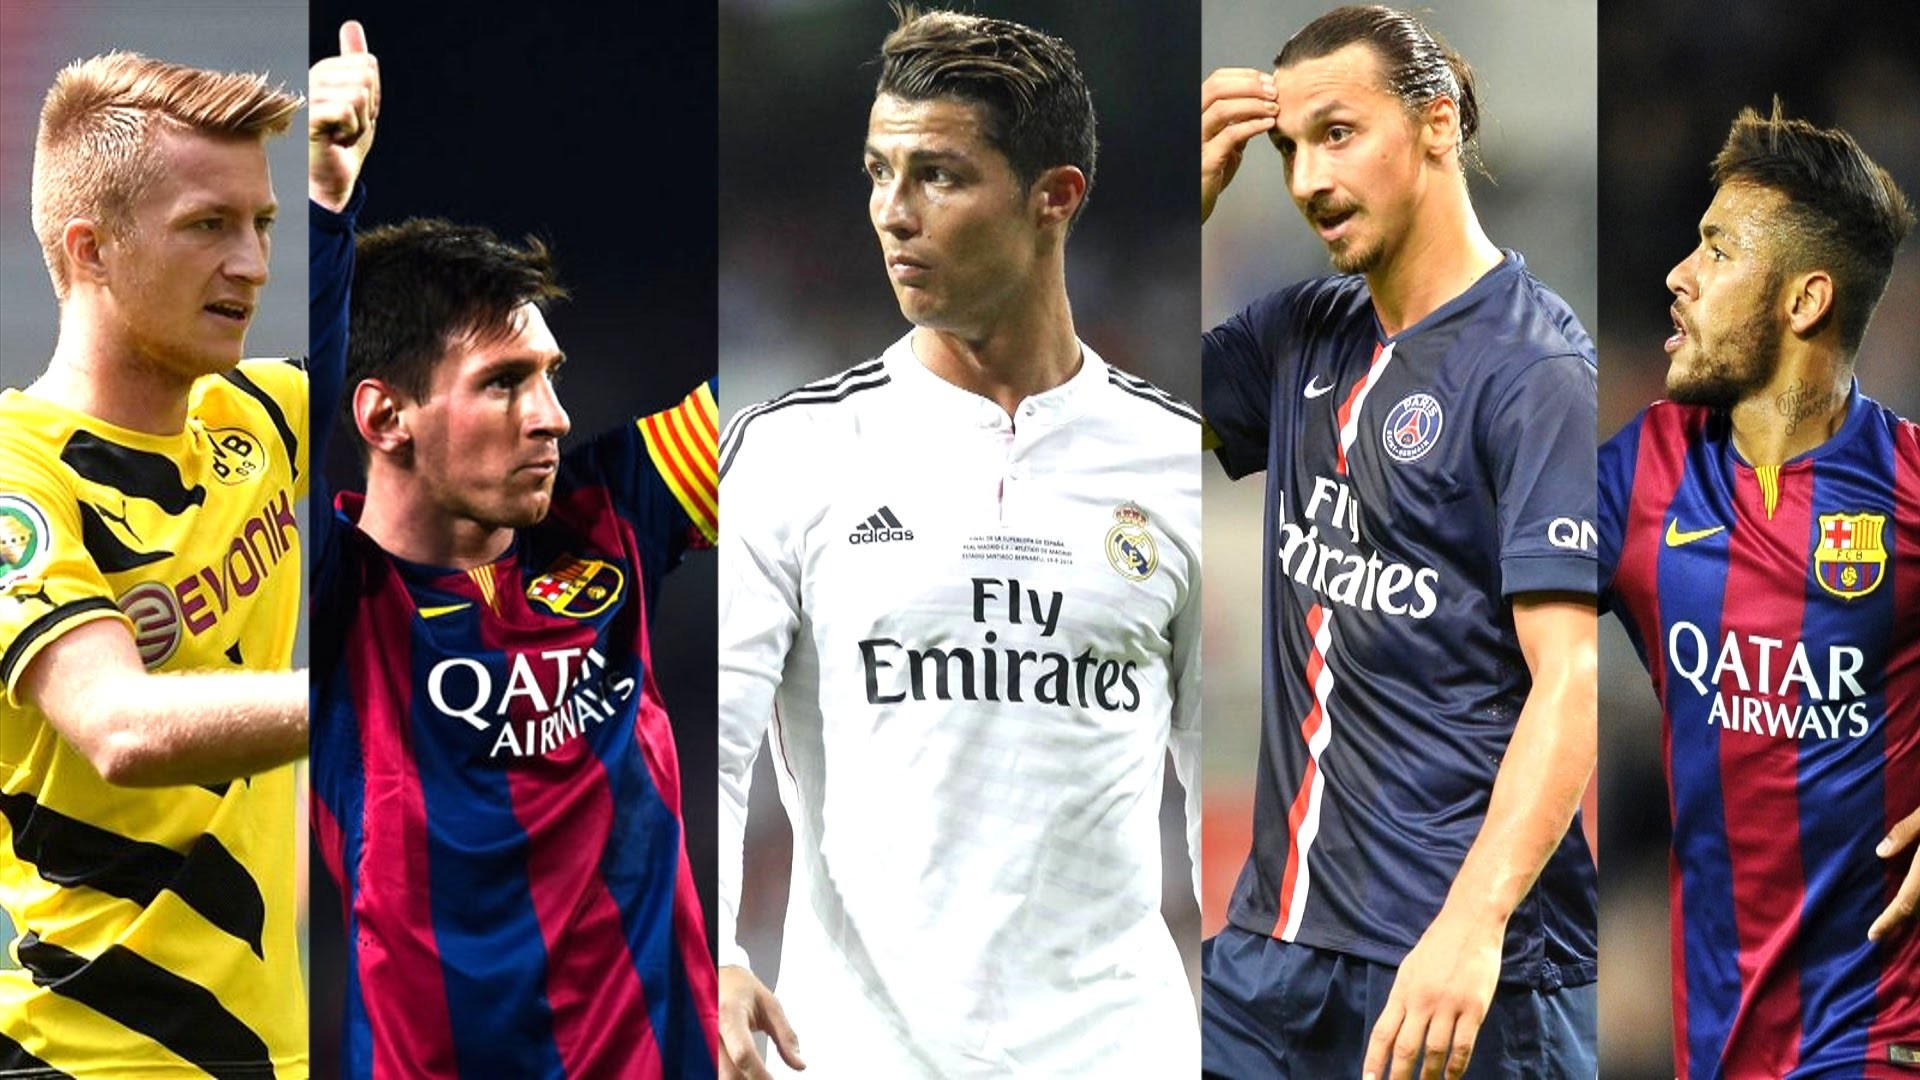 Messi, Neymar và Ronaldo là ba trong số những cầu thủ bóng đá đẳng cấp và có tầm ảnh hưởng nhất thế giới đã từng biết đến. Khám phá hình ảnh của họ và ngưỡng mộ những khoảnh khắc lịch sử của bóng đá.